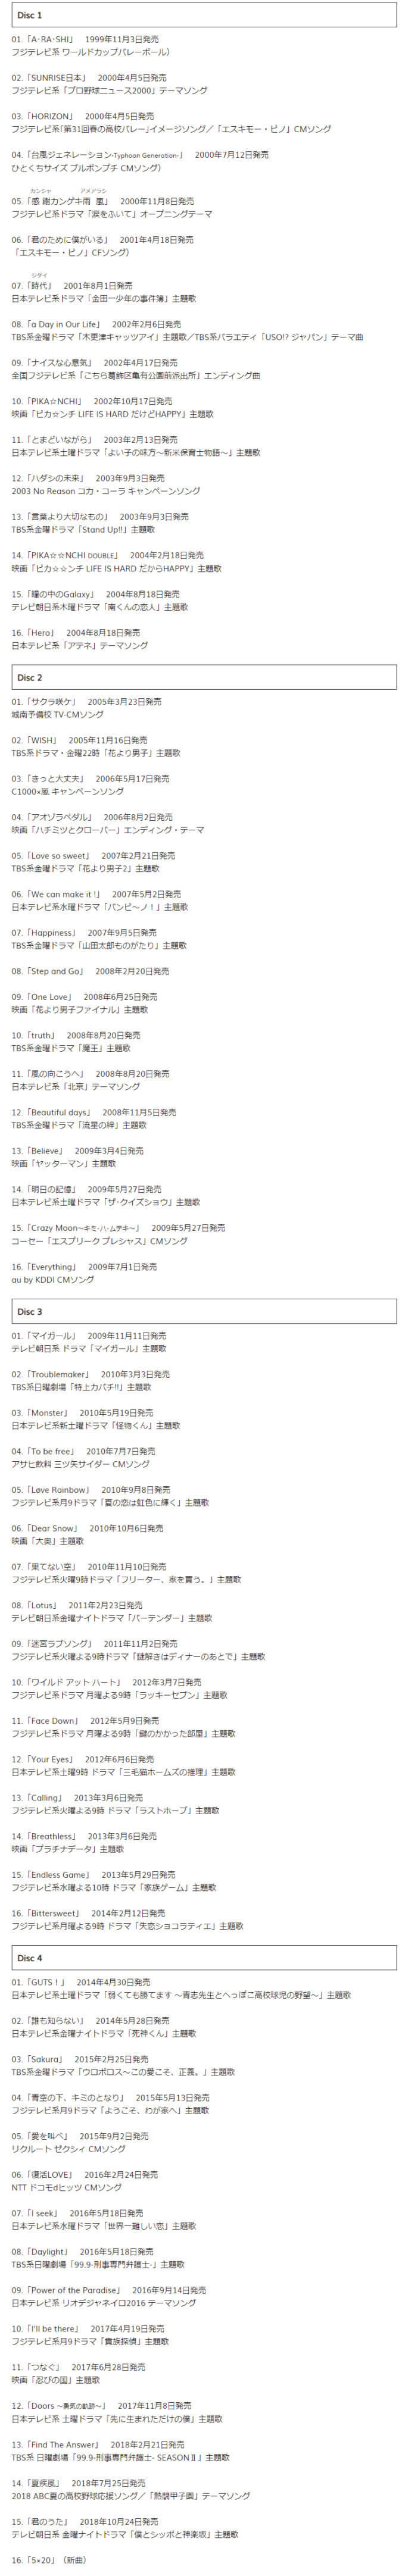 まとめ売り 嵐 5×20 ベストアルバム 初回限定盤 10セット 6月発売分